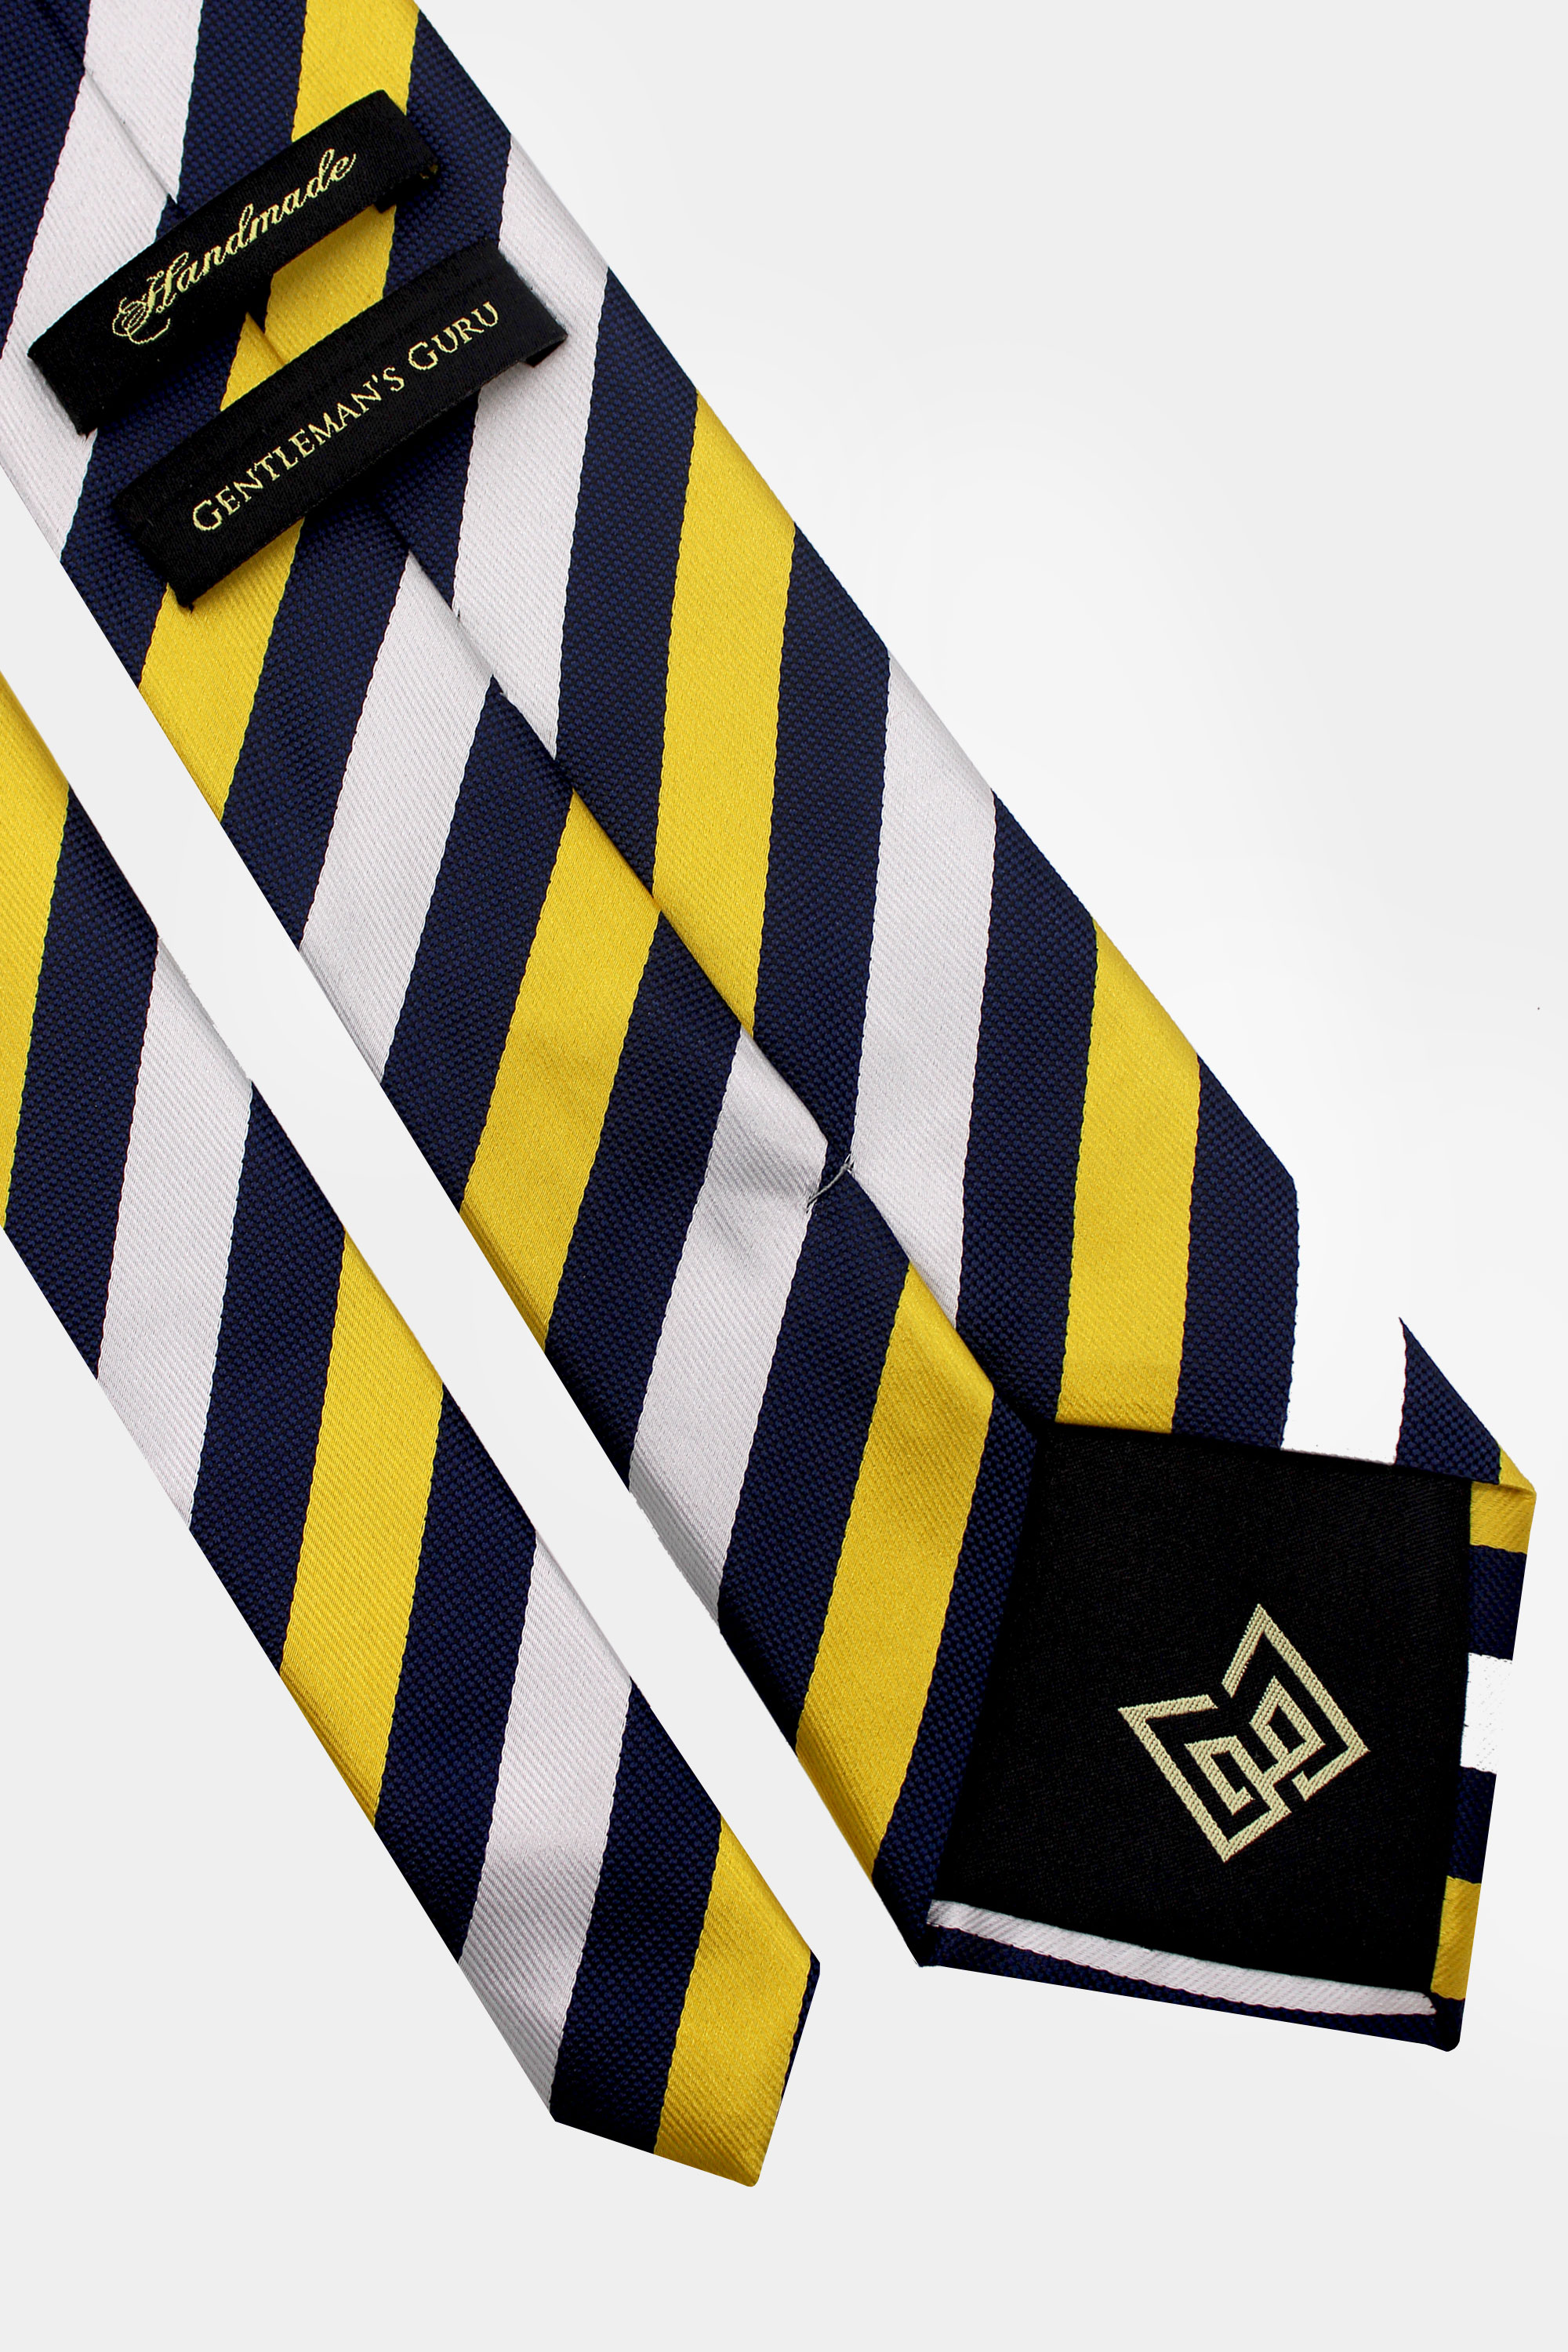 Navy-Blue-White-and-Gold-Striped-Tie-from-Gentlemansguru.com